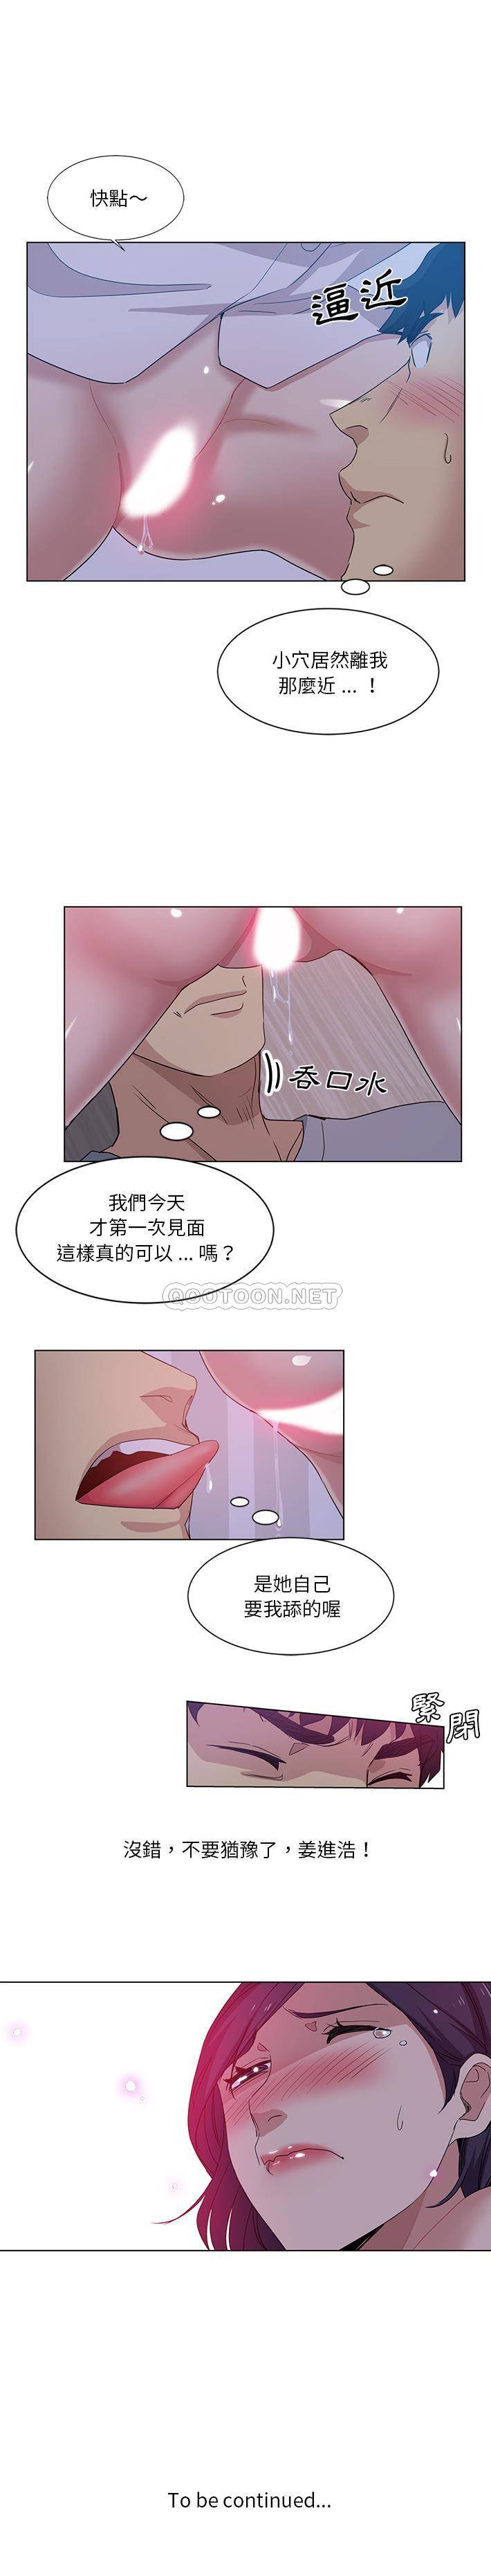 韩国污漫画 危險純友誼 第1话 16